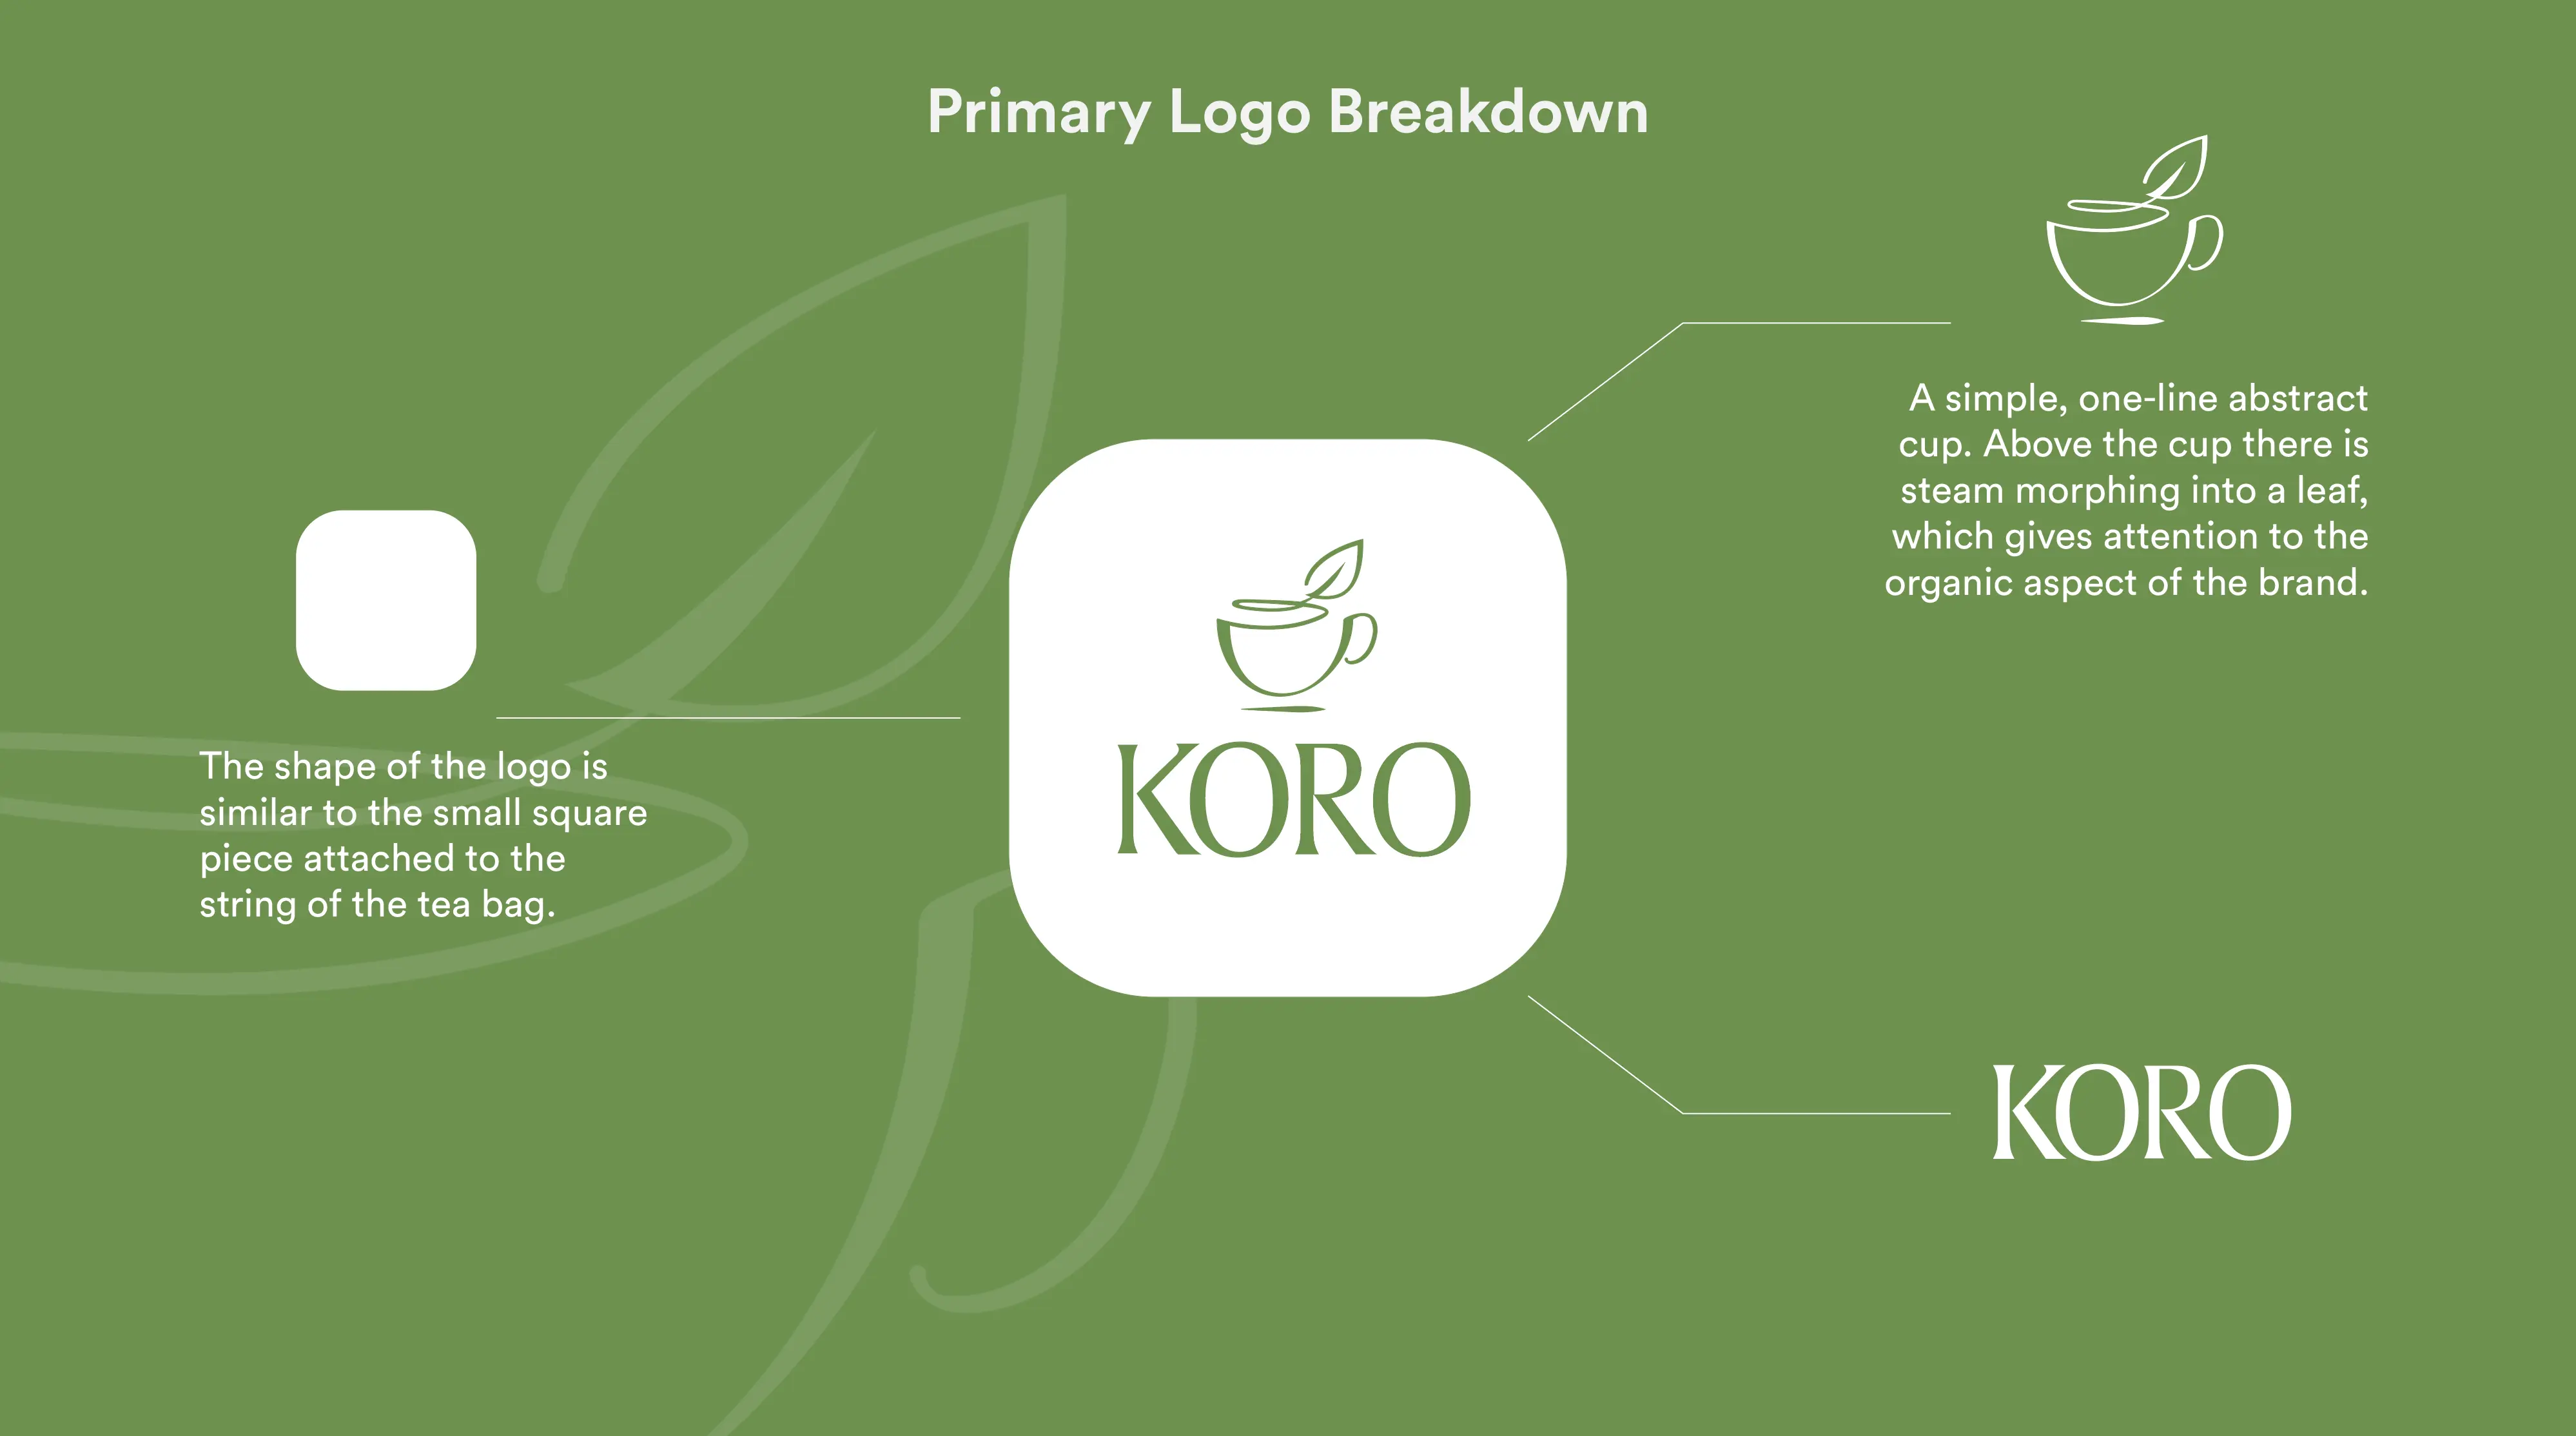 Breakdown of the logo elements